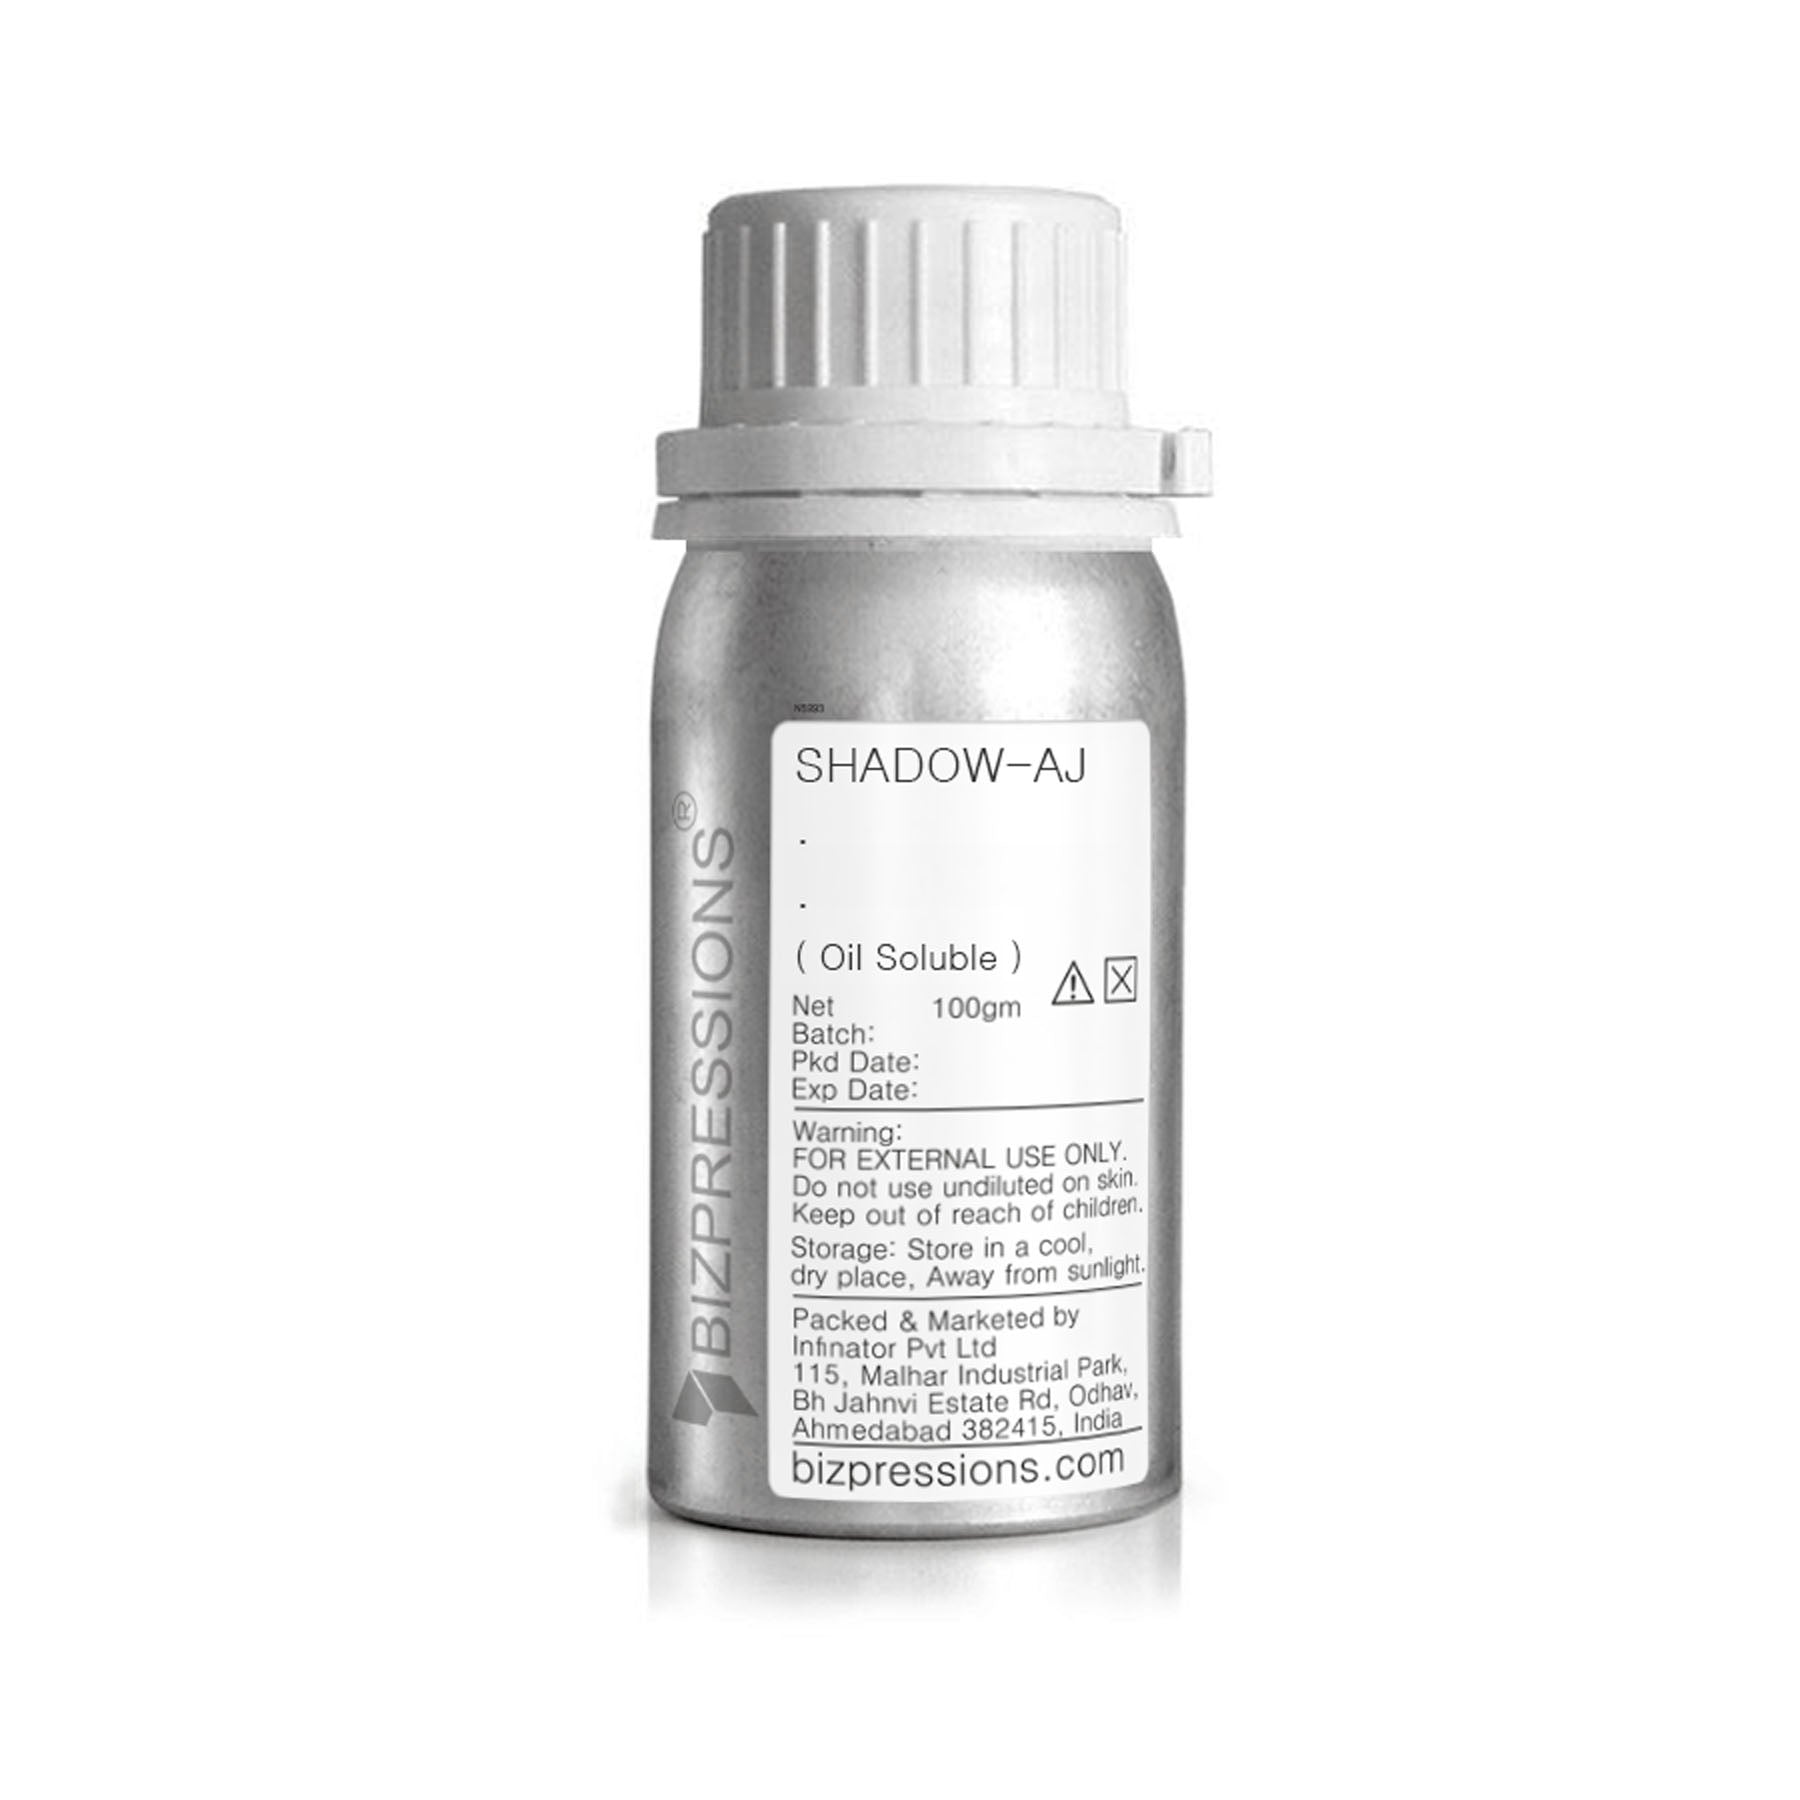 SHADOW-AJ - Fragrance ( Oil Soluble ) - 100 gm